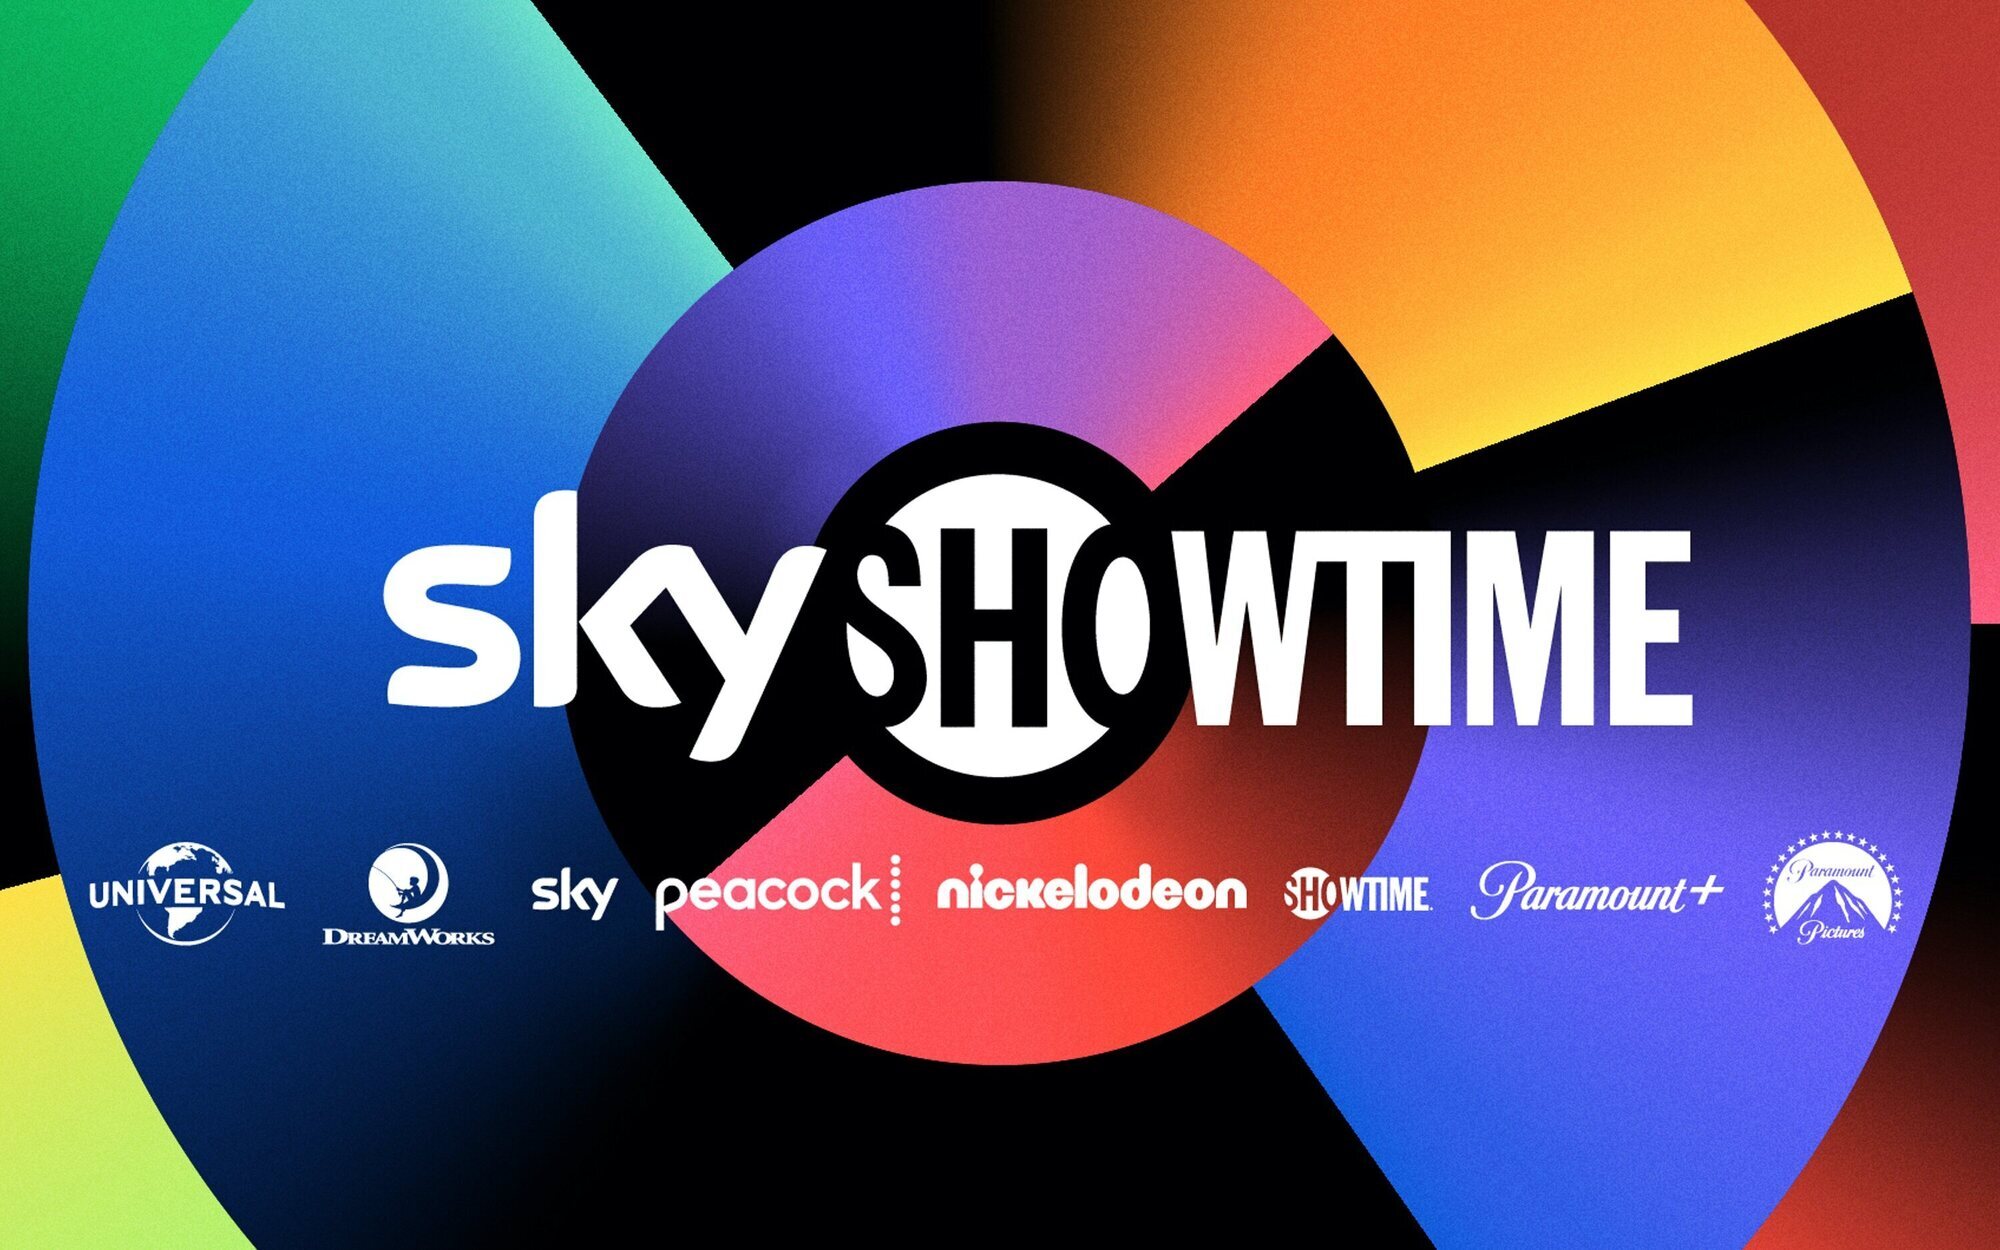 SkyShowtime descubre cuándo desembarca en España, pero no concreta sus tarifas